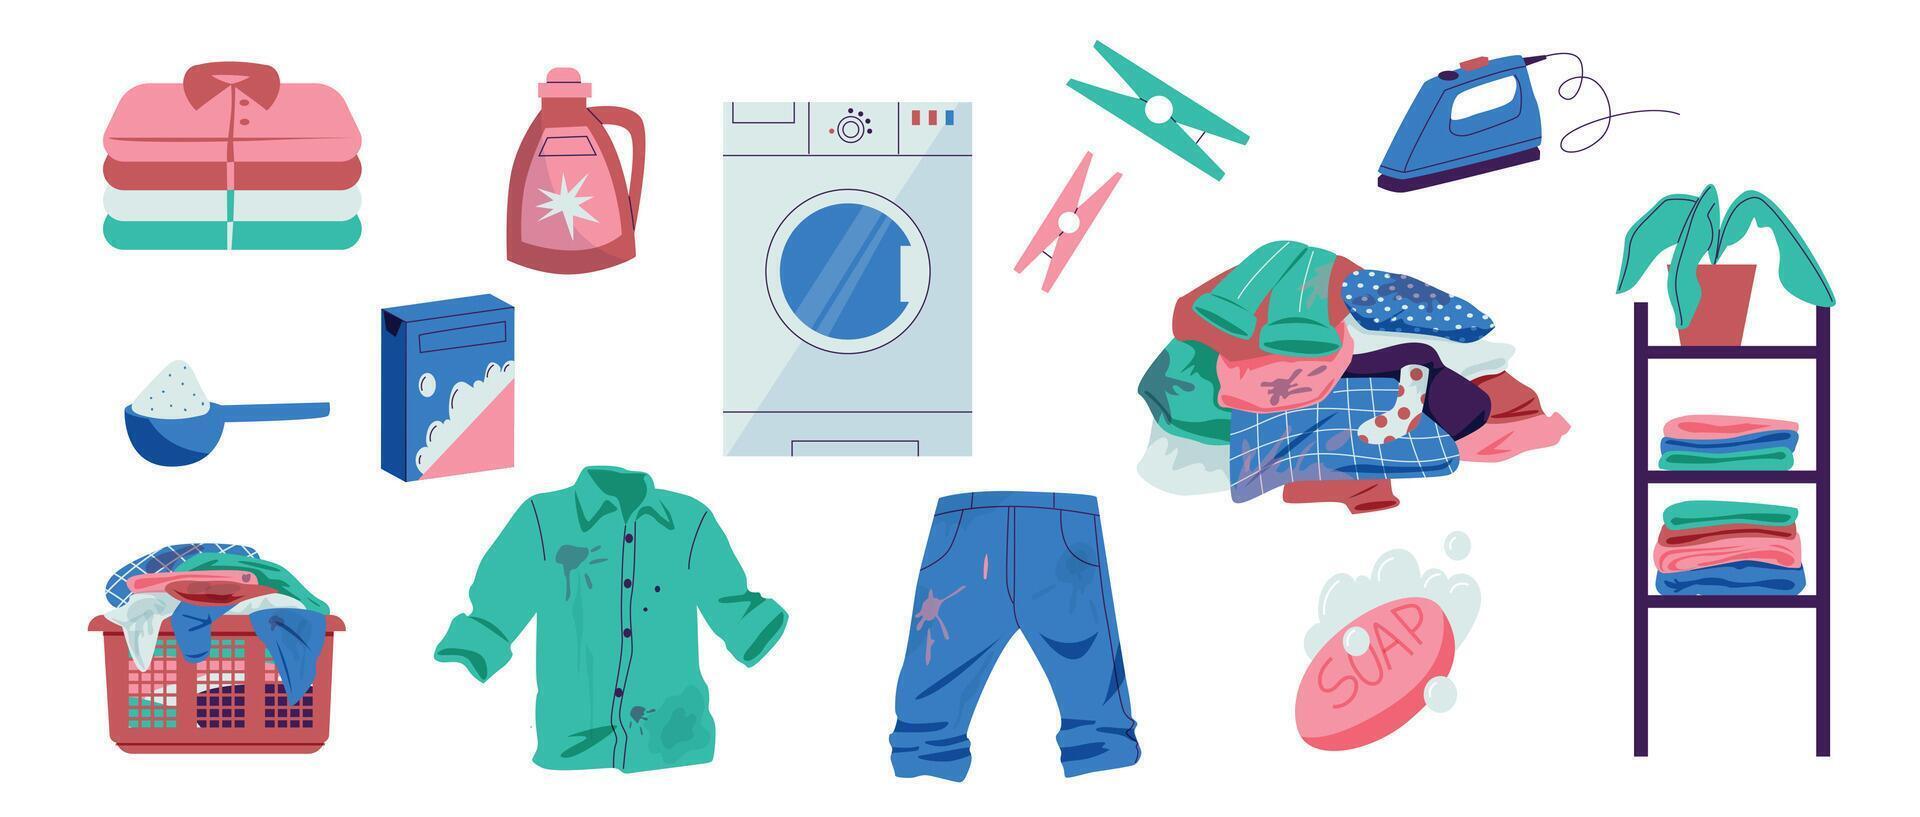 hogar lavadero. dibujos animados sucio lavandería en Lavado máquina, lavandería cesta con ropa, detergente lavadora y lejía. vector plano conjunto